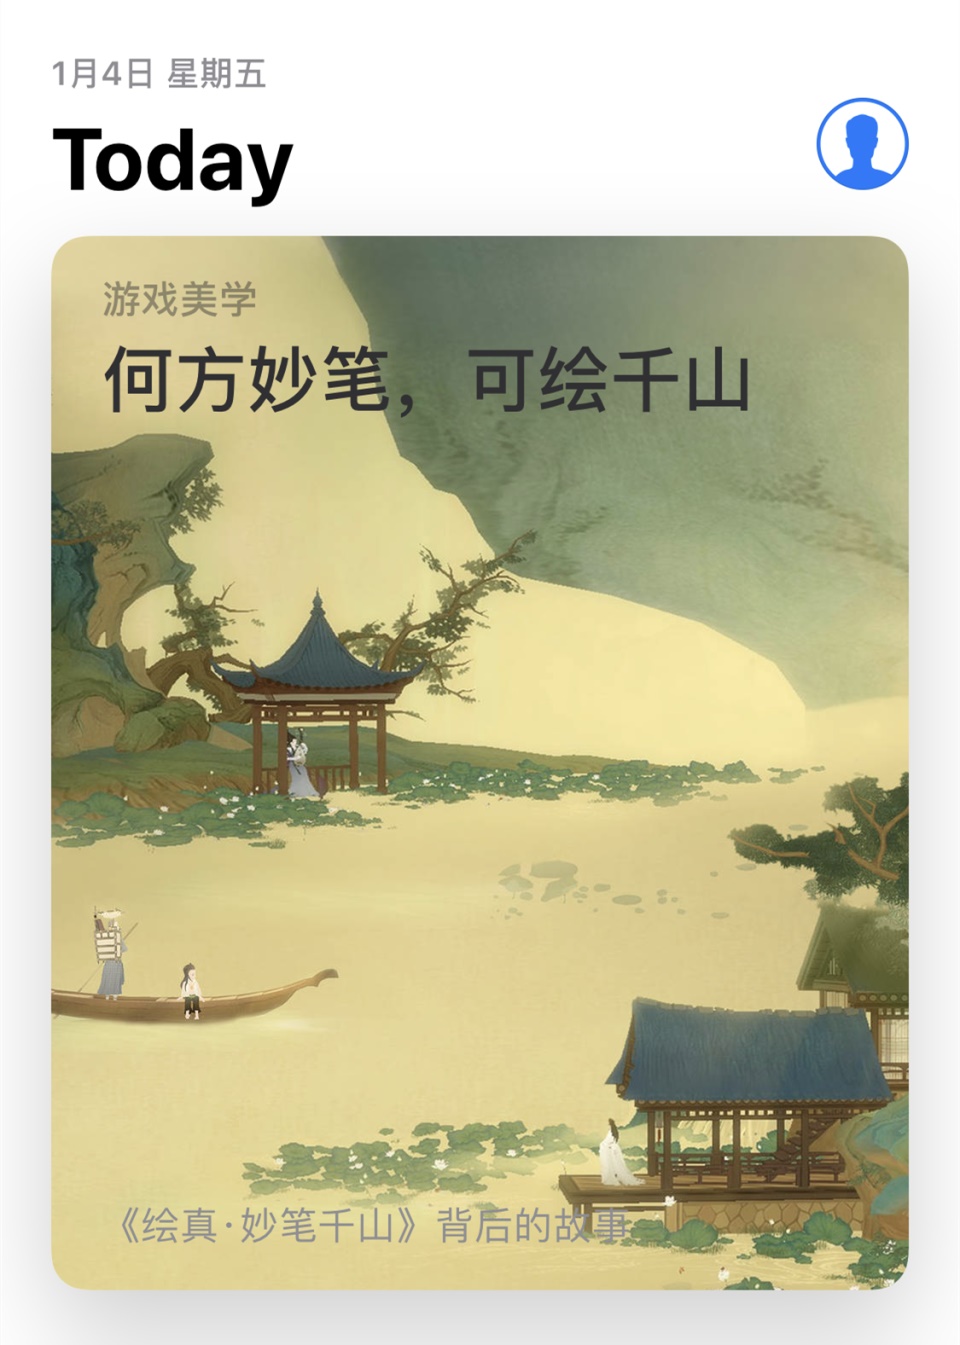 《绘真·妙笔千山》发行全球200多国  向全世界传播中国传统文化